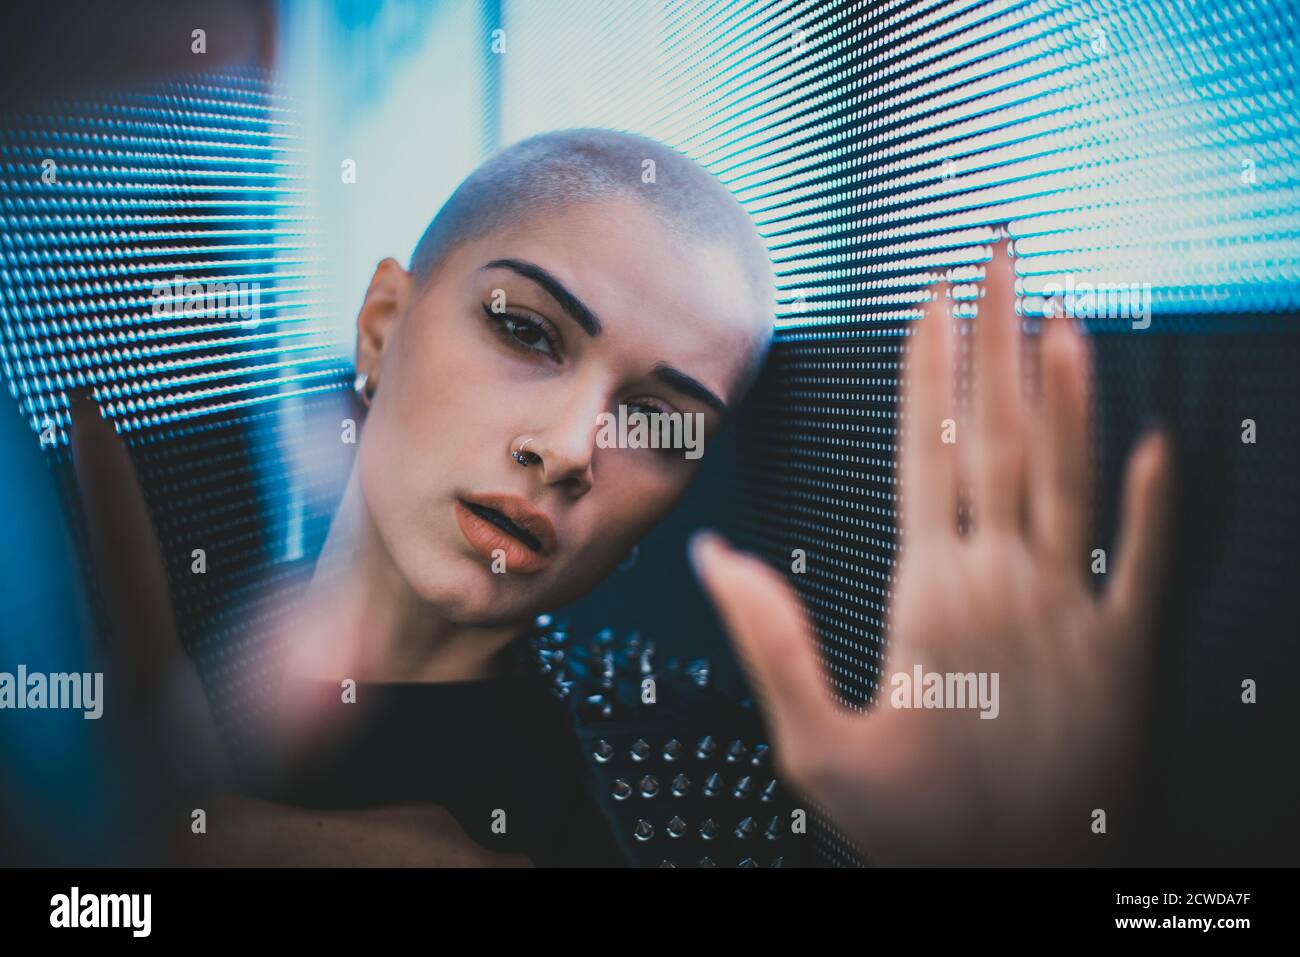 Imagen de una hermosa joven posando contra un panel de LED. Cabeza afeitada adolescente con aspecto alternativo haciendo retratos urbanos Foto de stock